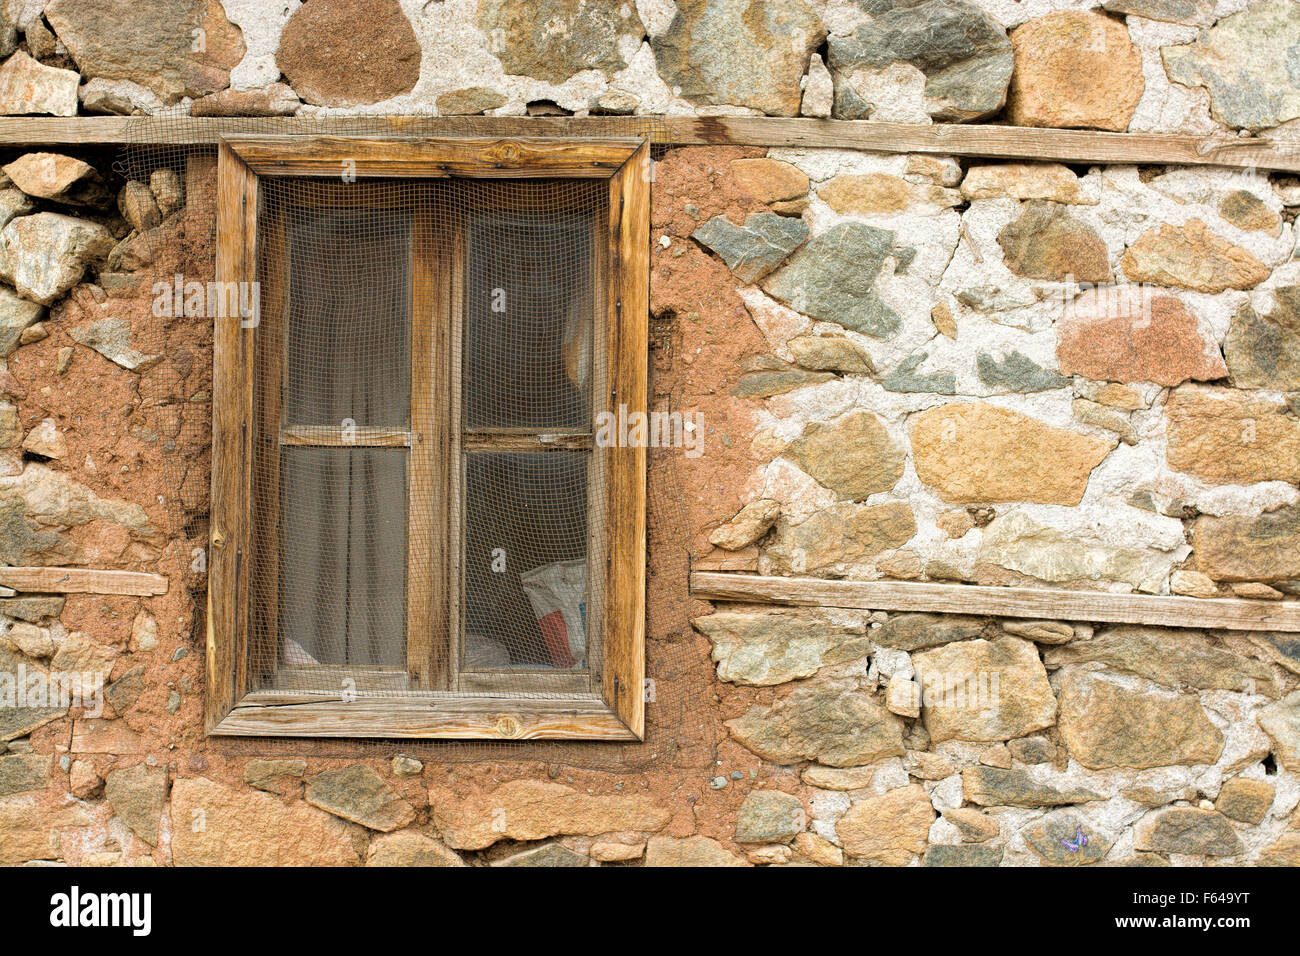 Vieille fenêtre dans un ancien mur de briques dans une ferme abandonnée, grange Banque D'Images